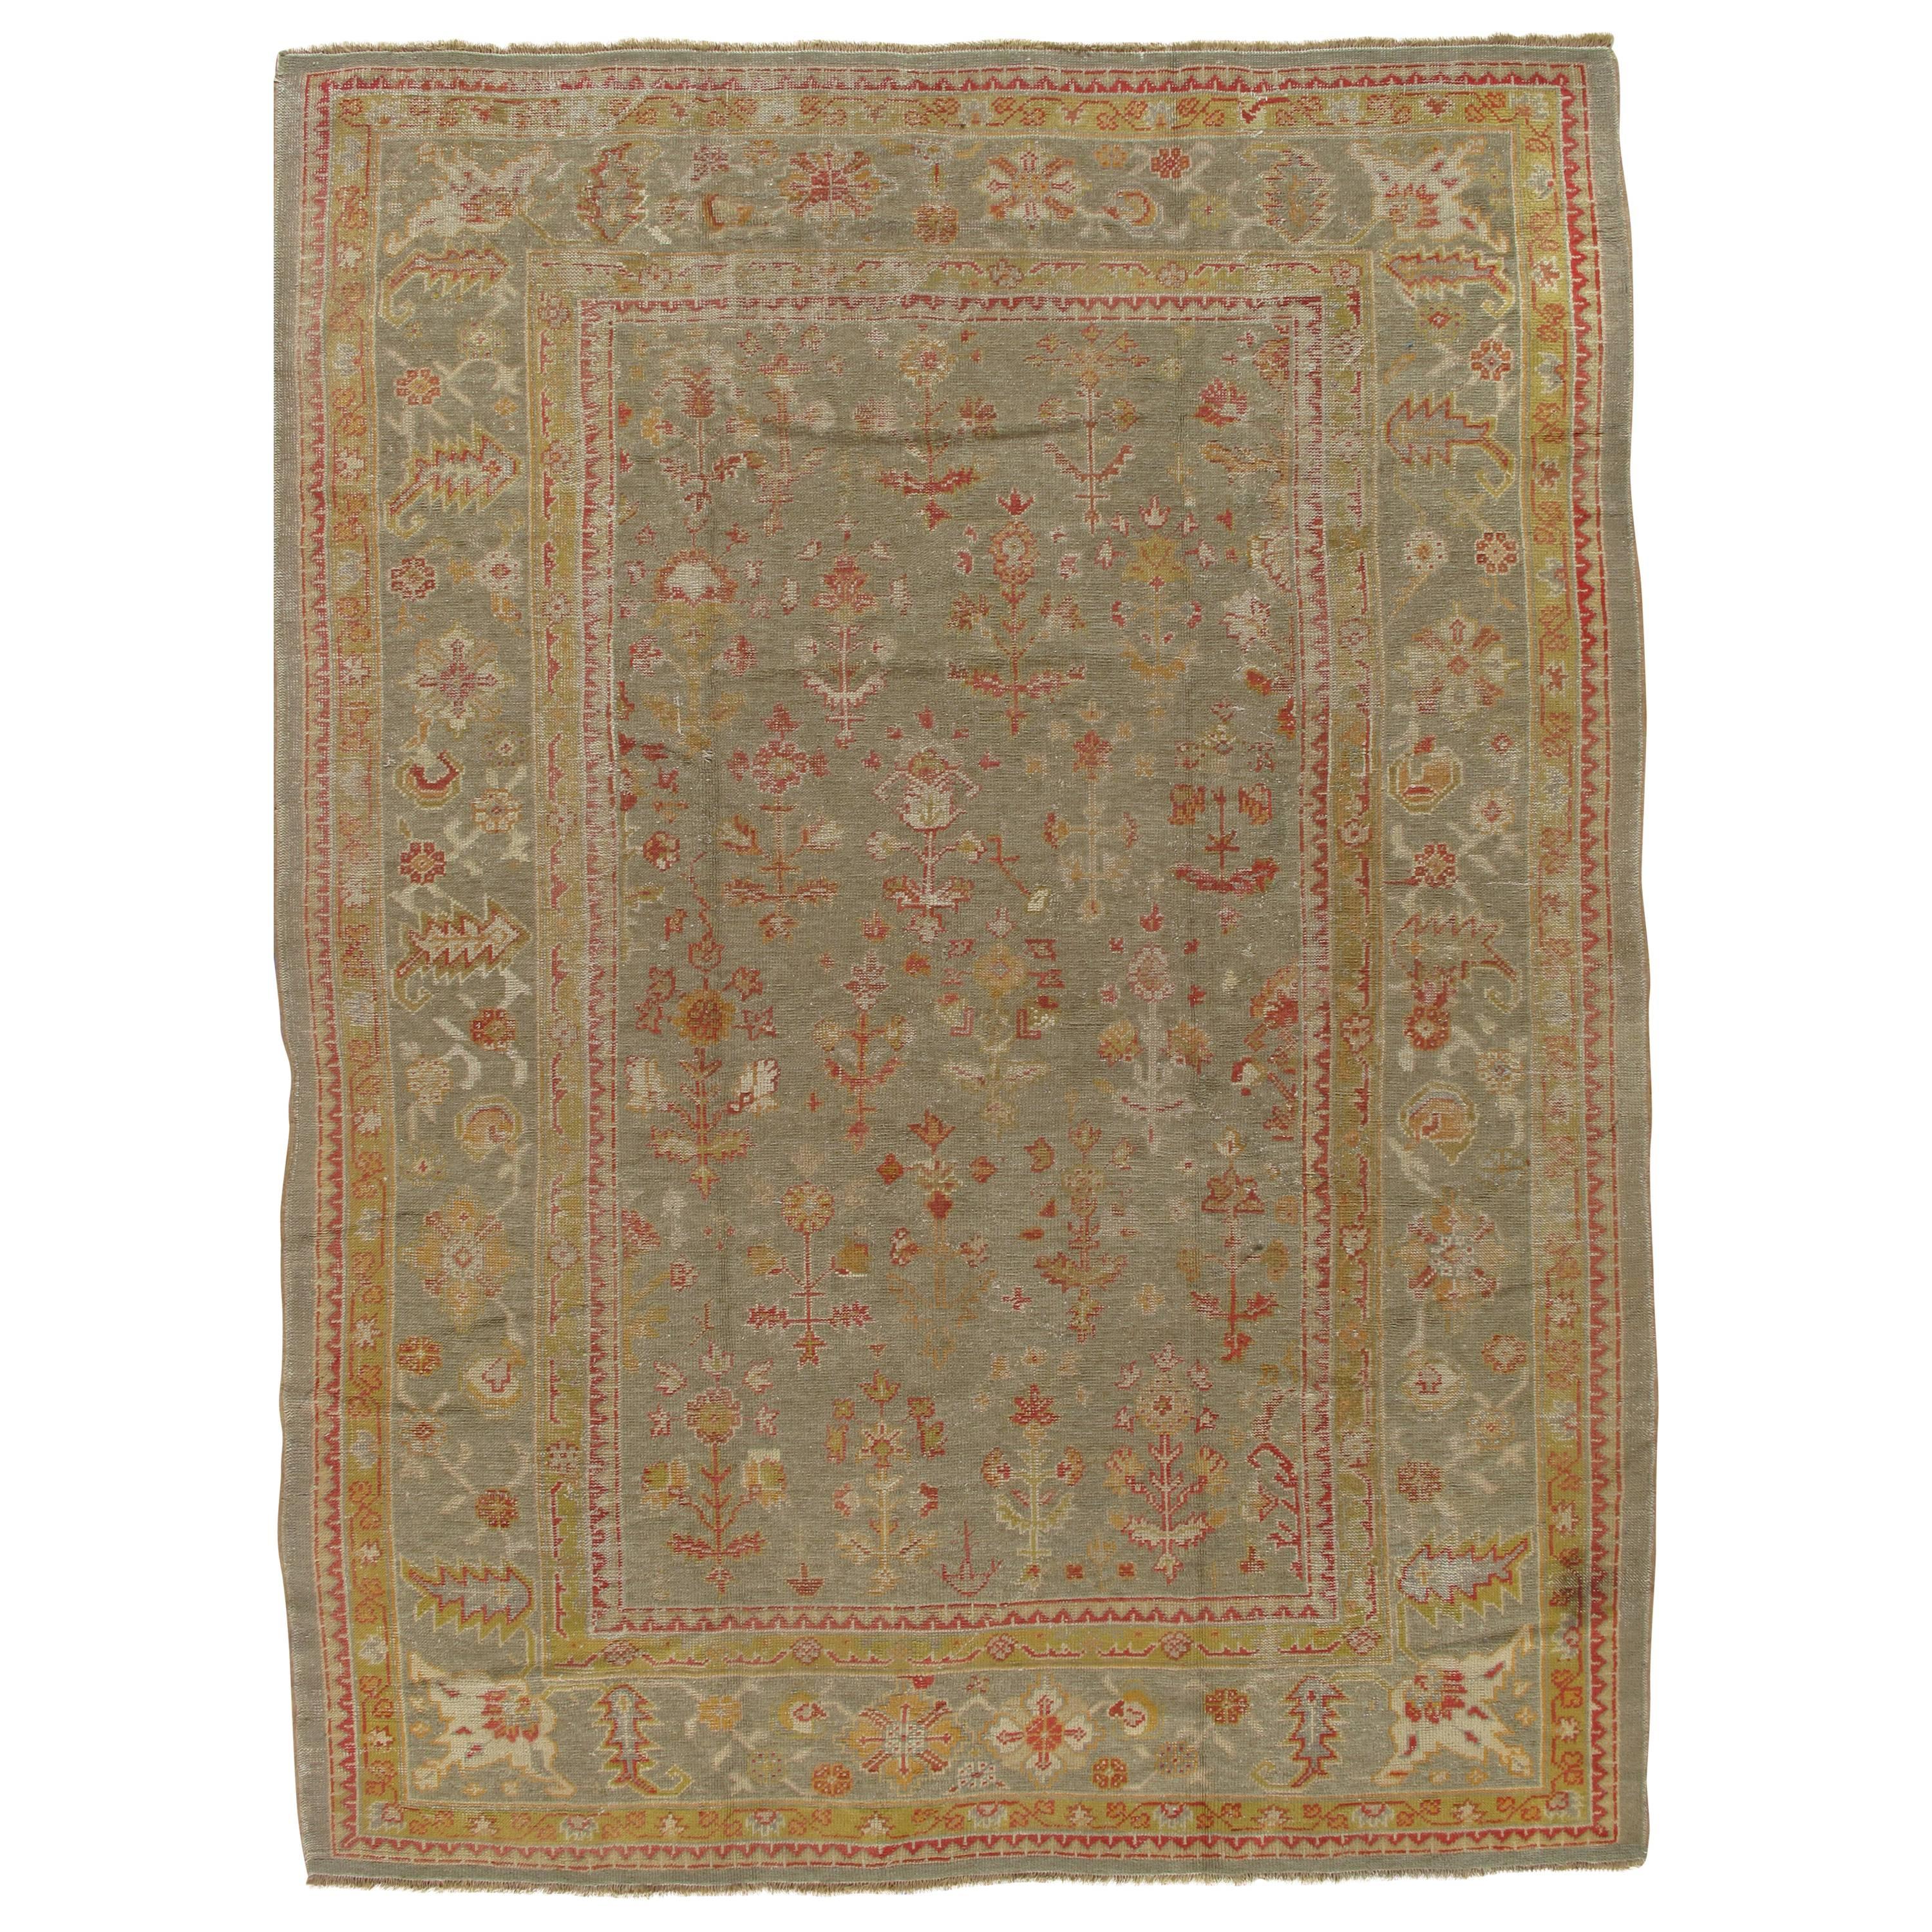 Antique Turkish Oushak Carpet, Handmade Wool Oriental Rug, Green Rug